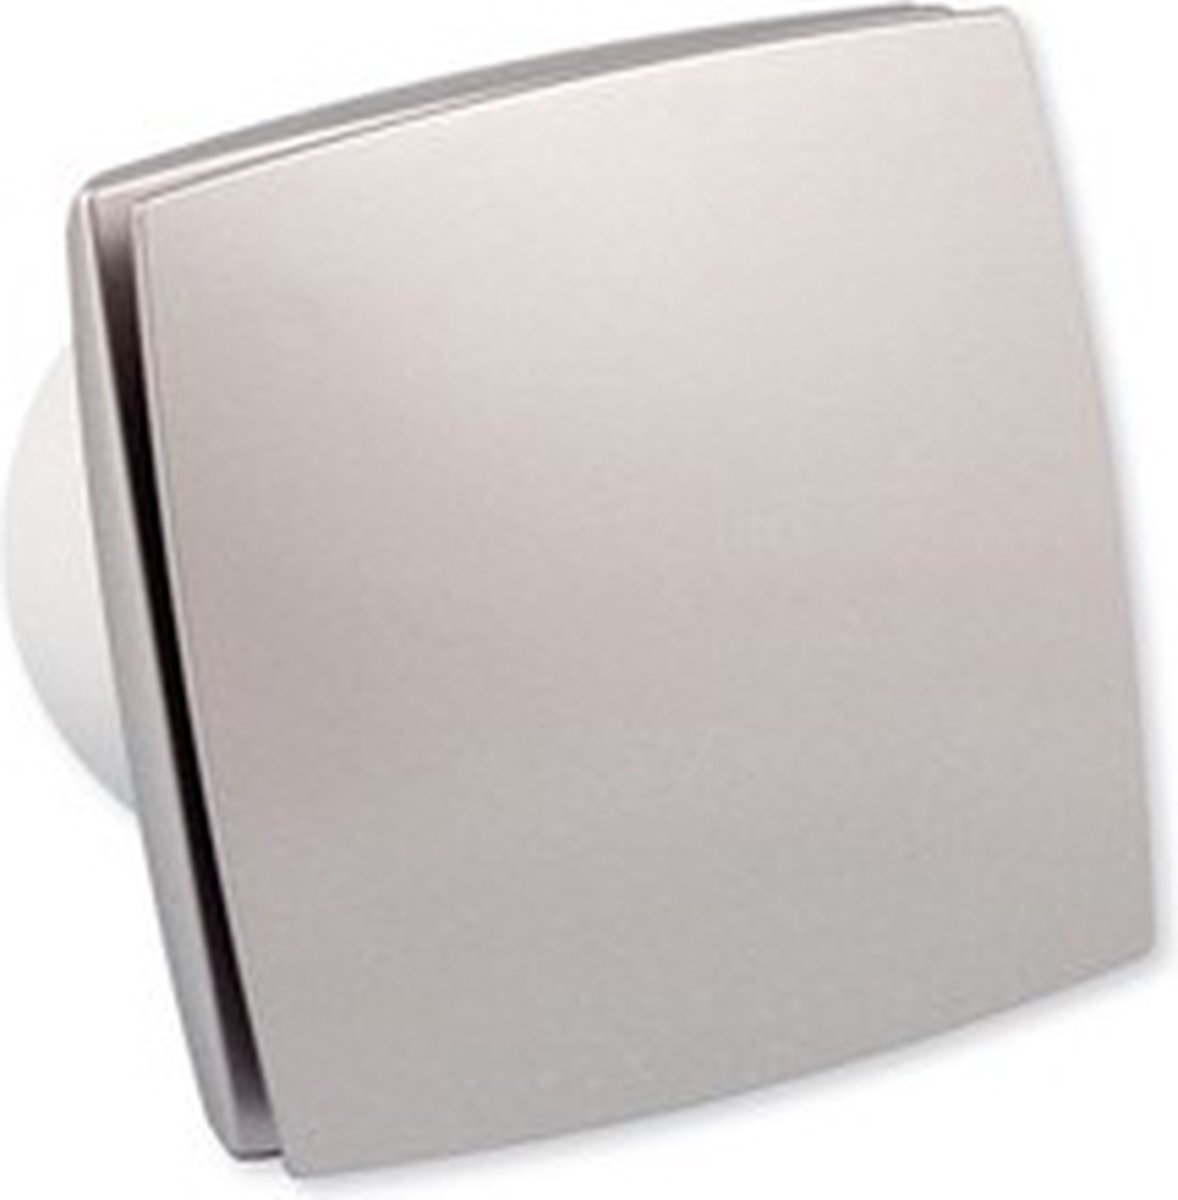 Ventilator Design 100, met tijdrelais, Aluminium look, ook geschikt voor badkamer of toilet